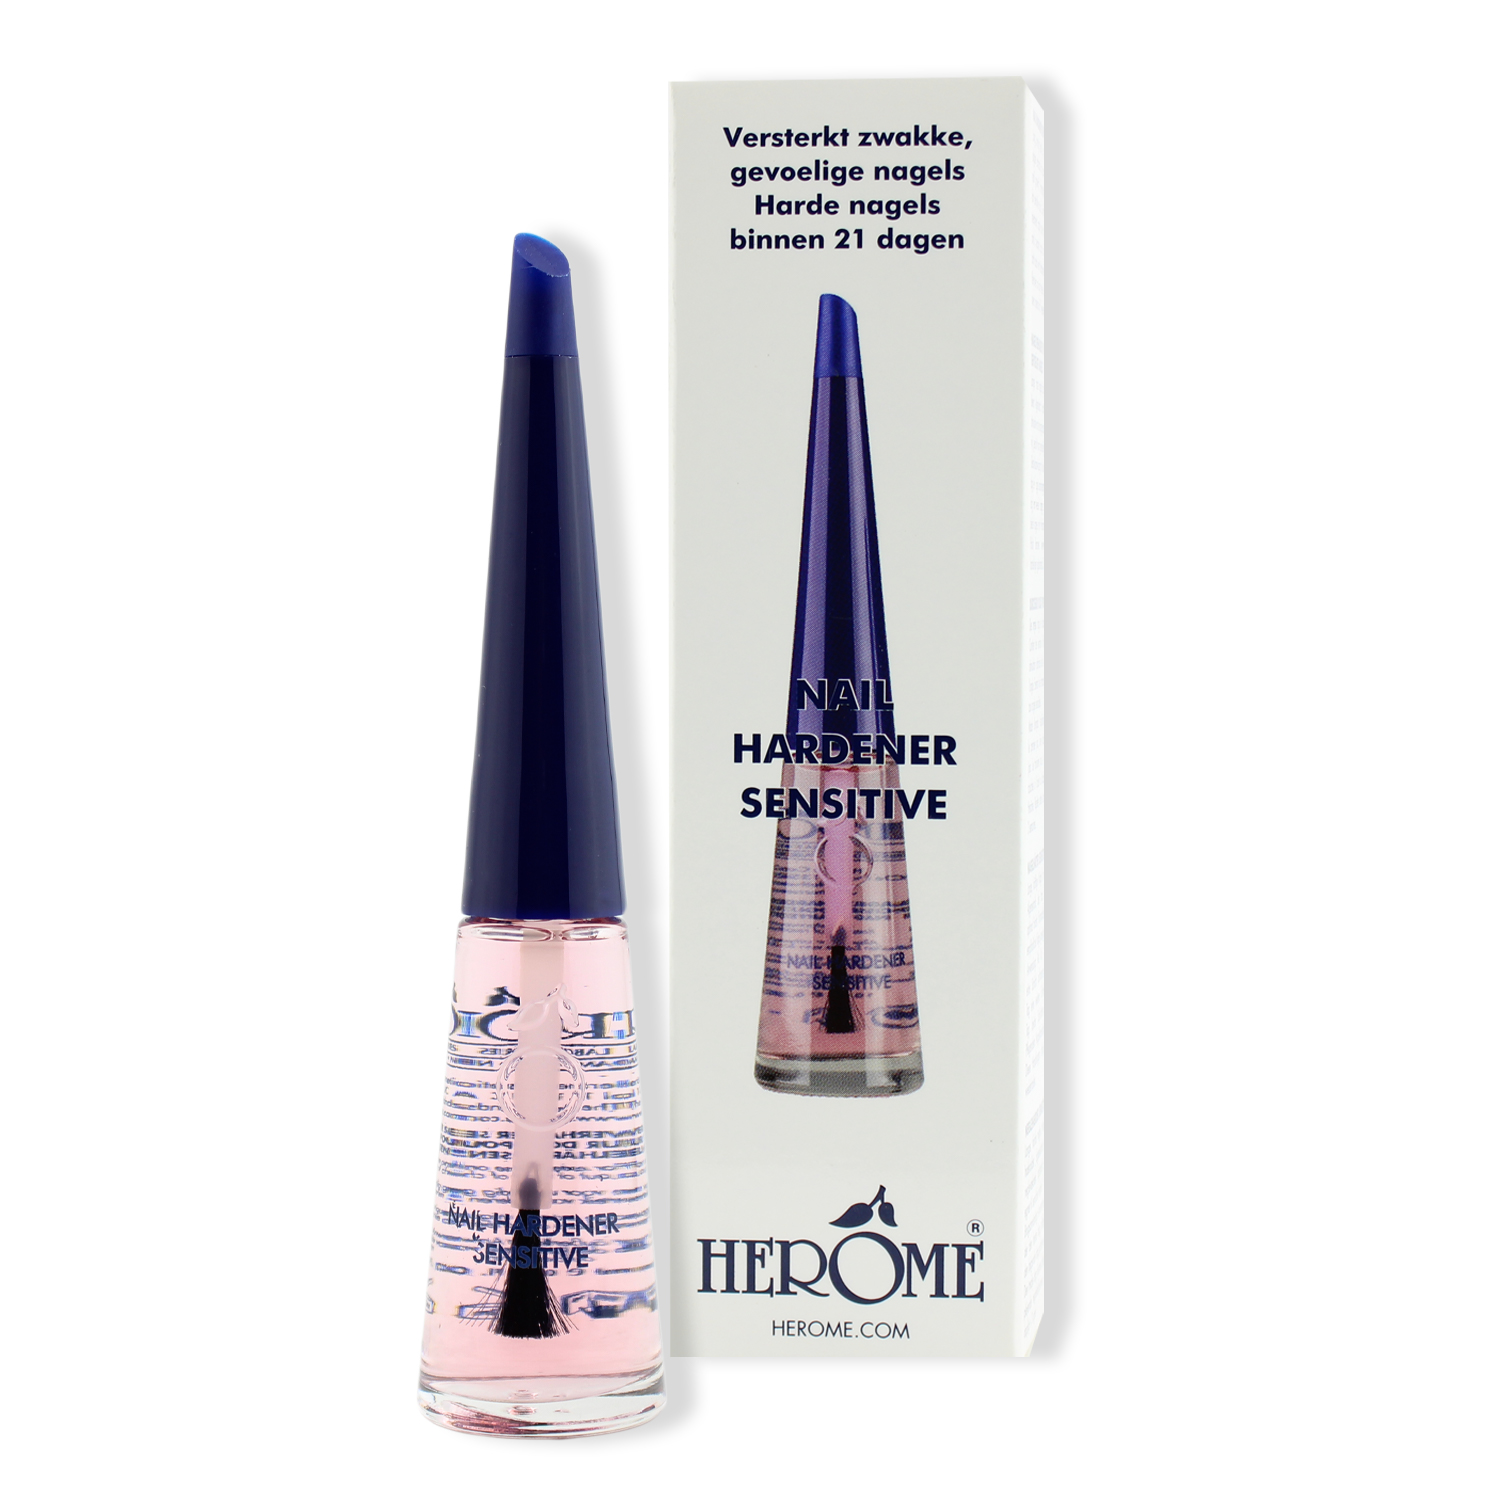 Herôme Nail Hardener Sensitive (Nagelhärter Sensitive) 10ml